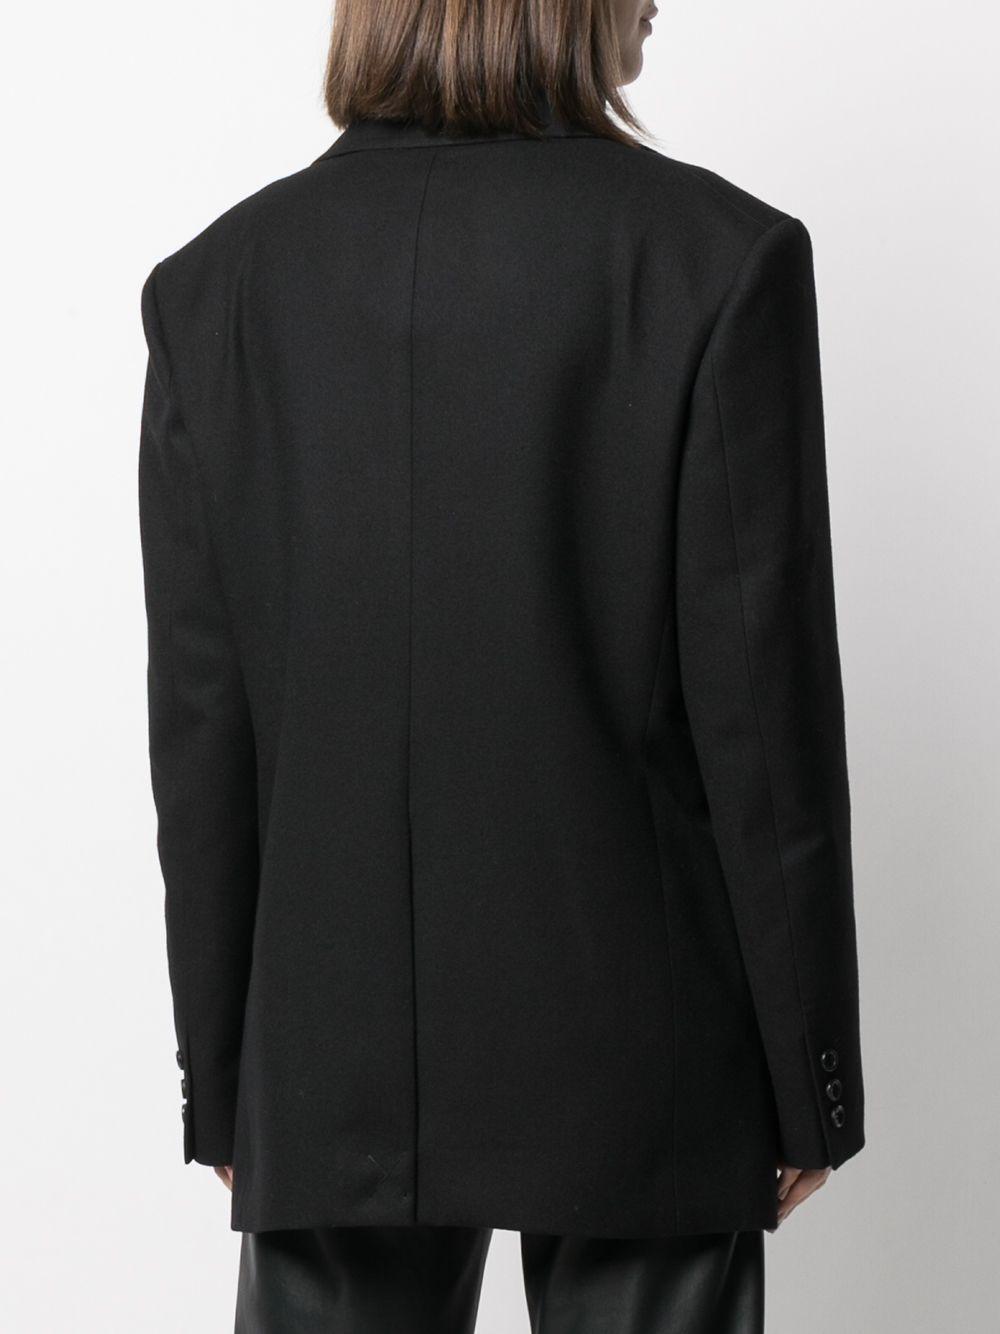 Junya Watanabe Wool Long-sleeved Structured Shoulders Jacket in Black ...